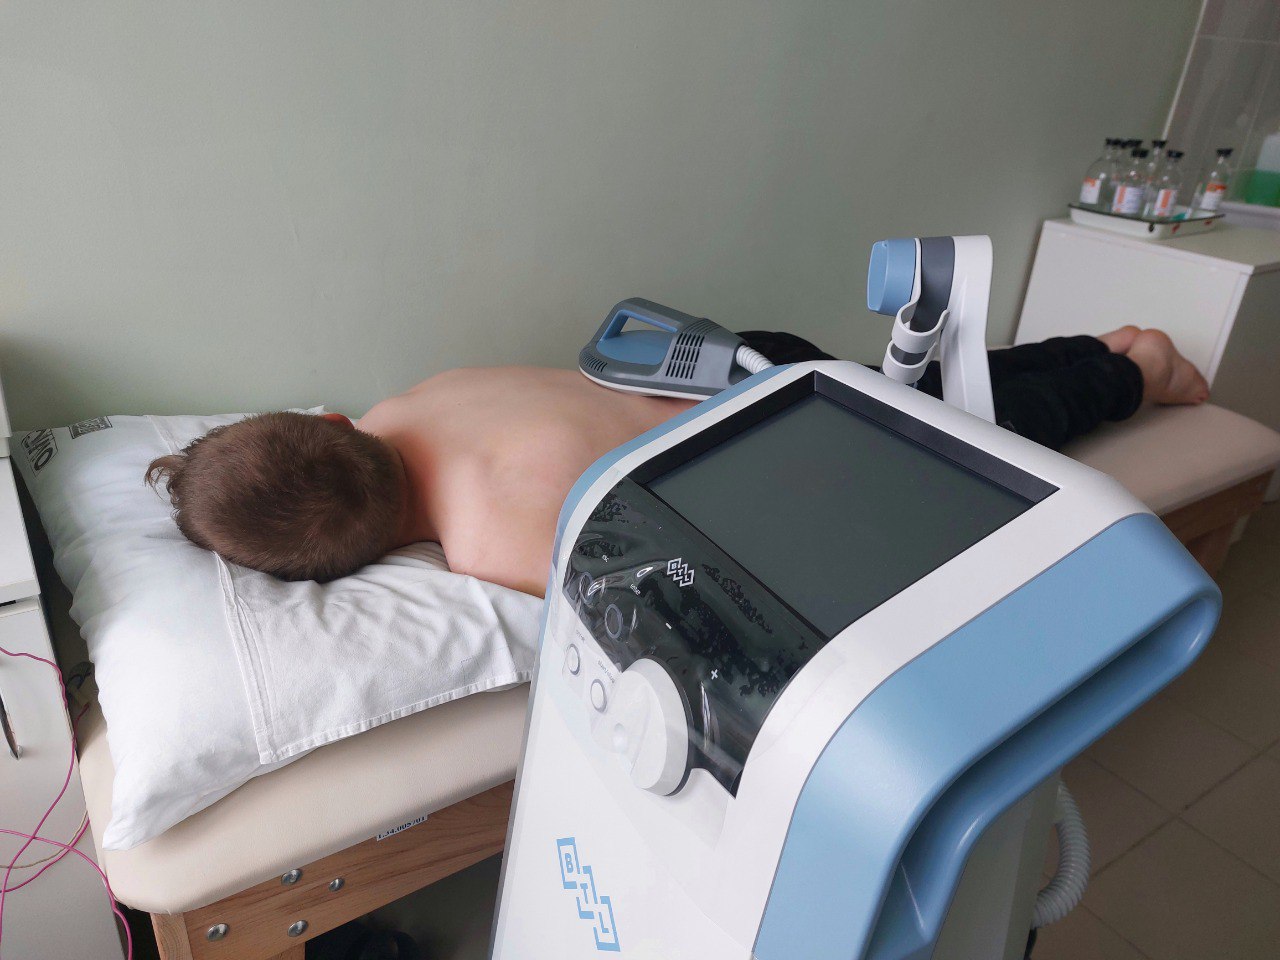 Инновационный метод терапии теперь доступен в Кузнецкой межрайонной детской больнице